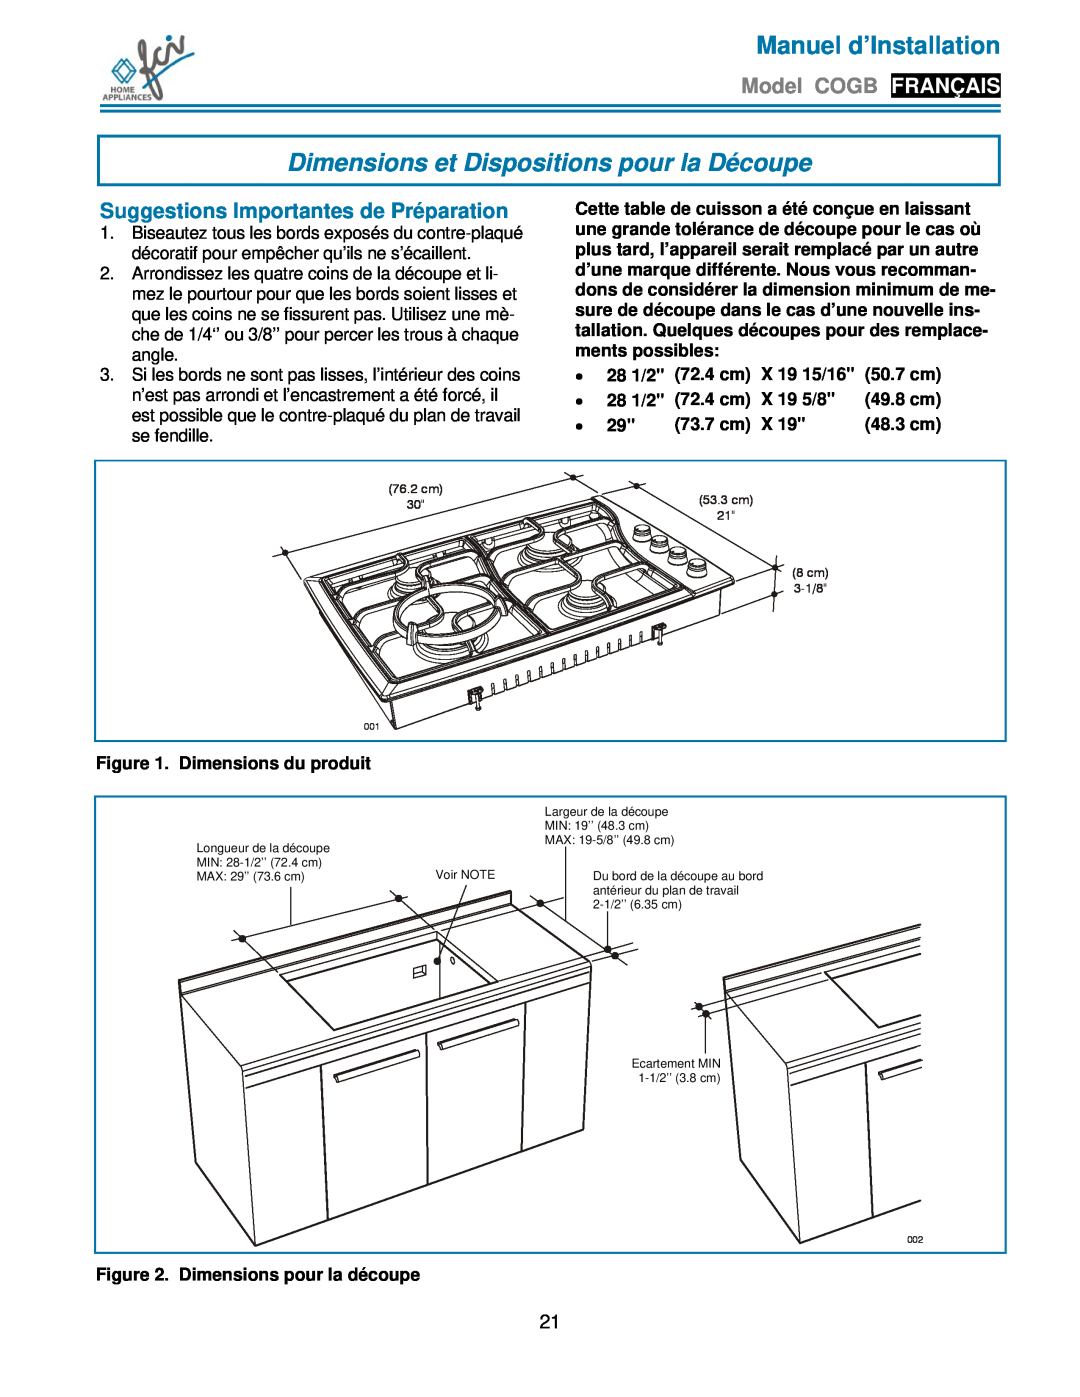 FCI Home Appliances COGB33061/WH Dimensions et Dispositions pour la Découpe, Suggestions Importantes de Préparation 